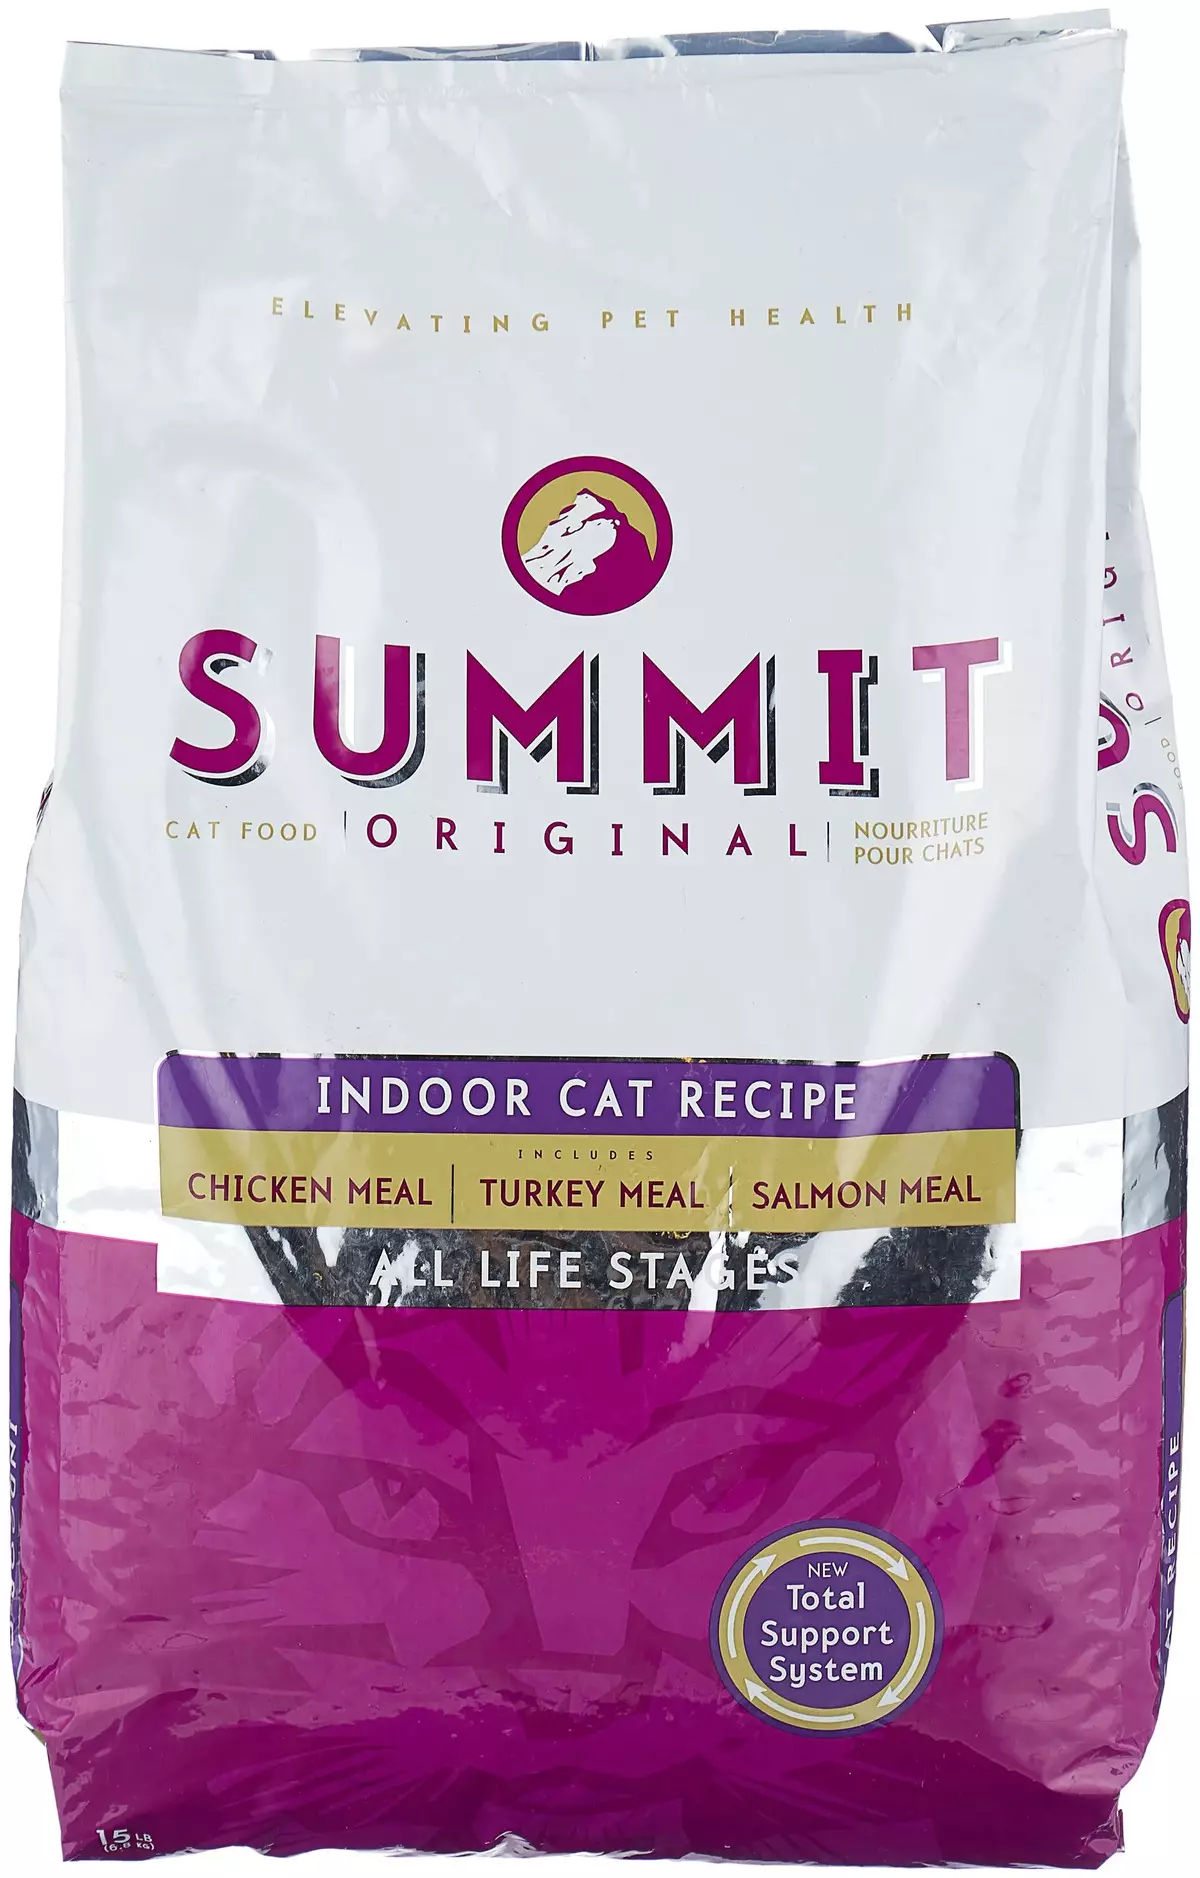 Σύνοδος κορυφής τροφοδοσίας γάτας: Σύνθεση και επισκόπηση ξηρού φαγητού για γατάκια και αποστειρωμένες ενήλικες γάτες, σχόλια 22071_7